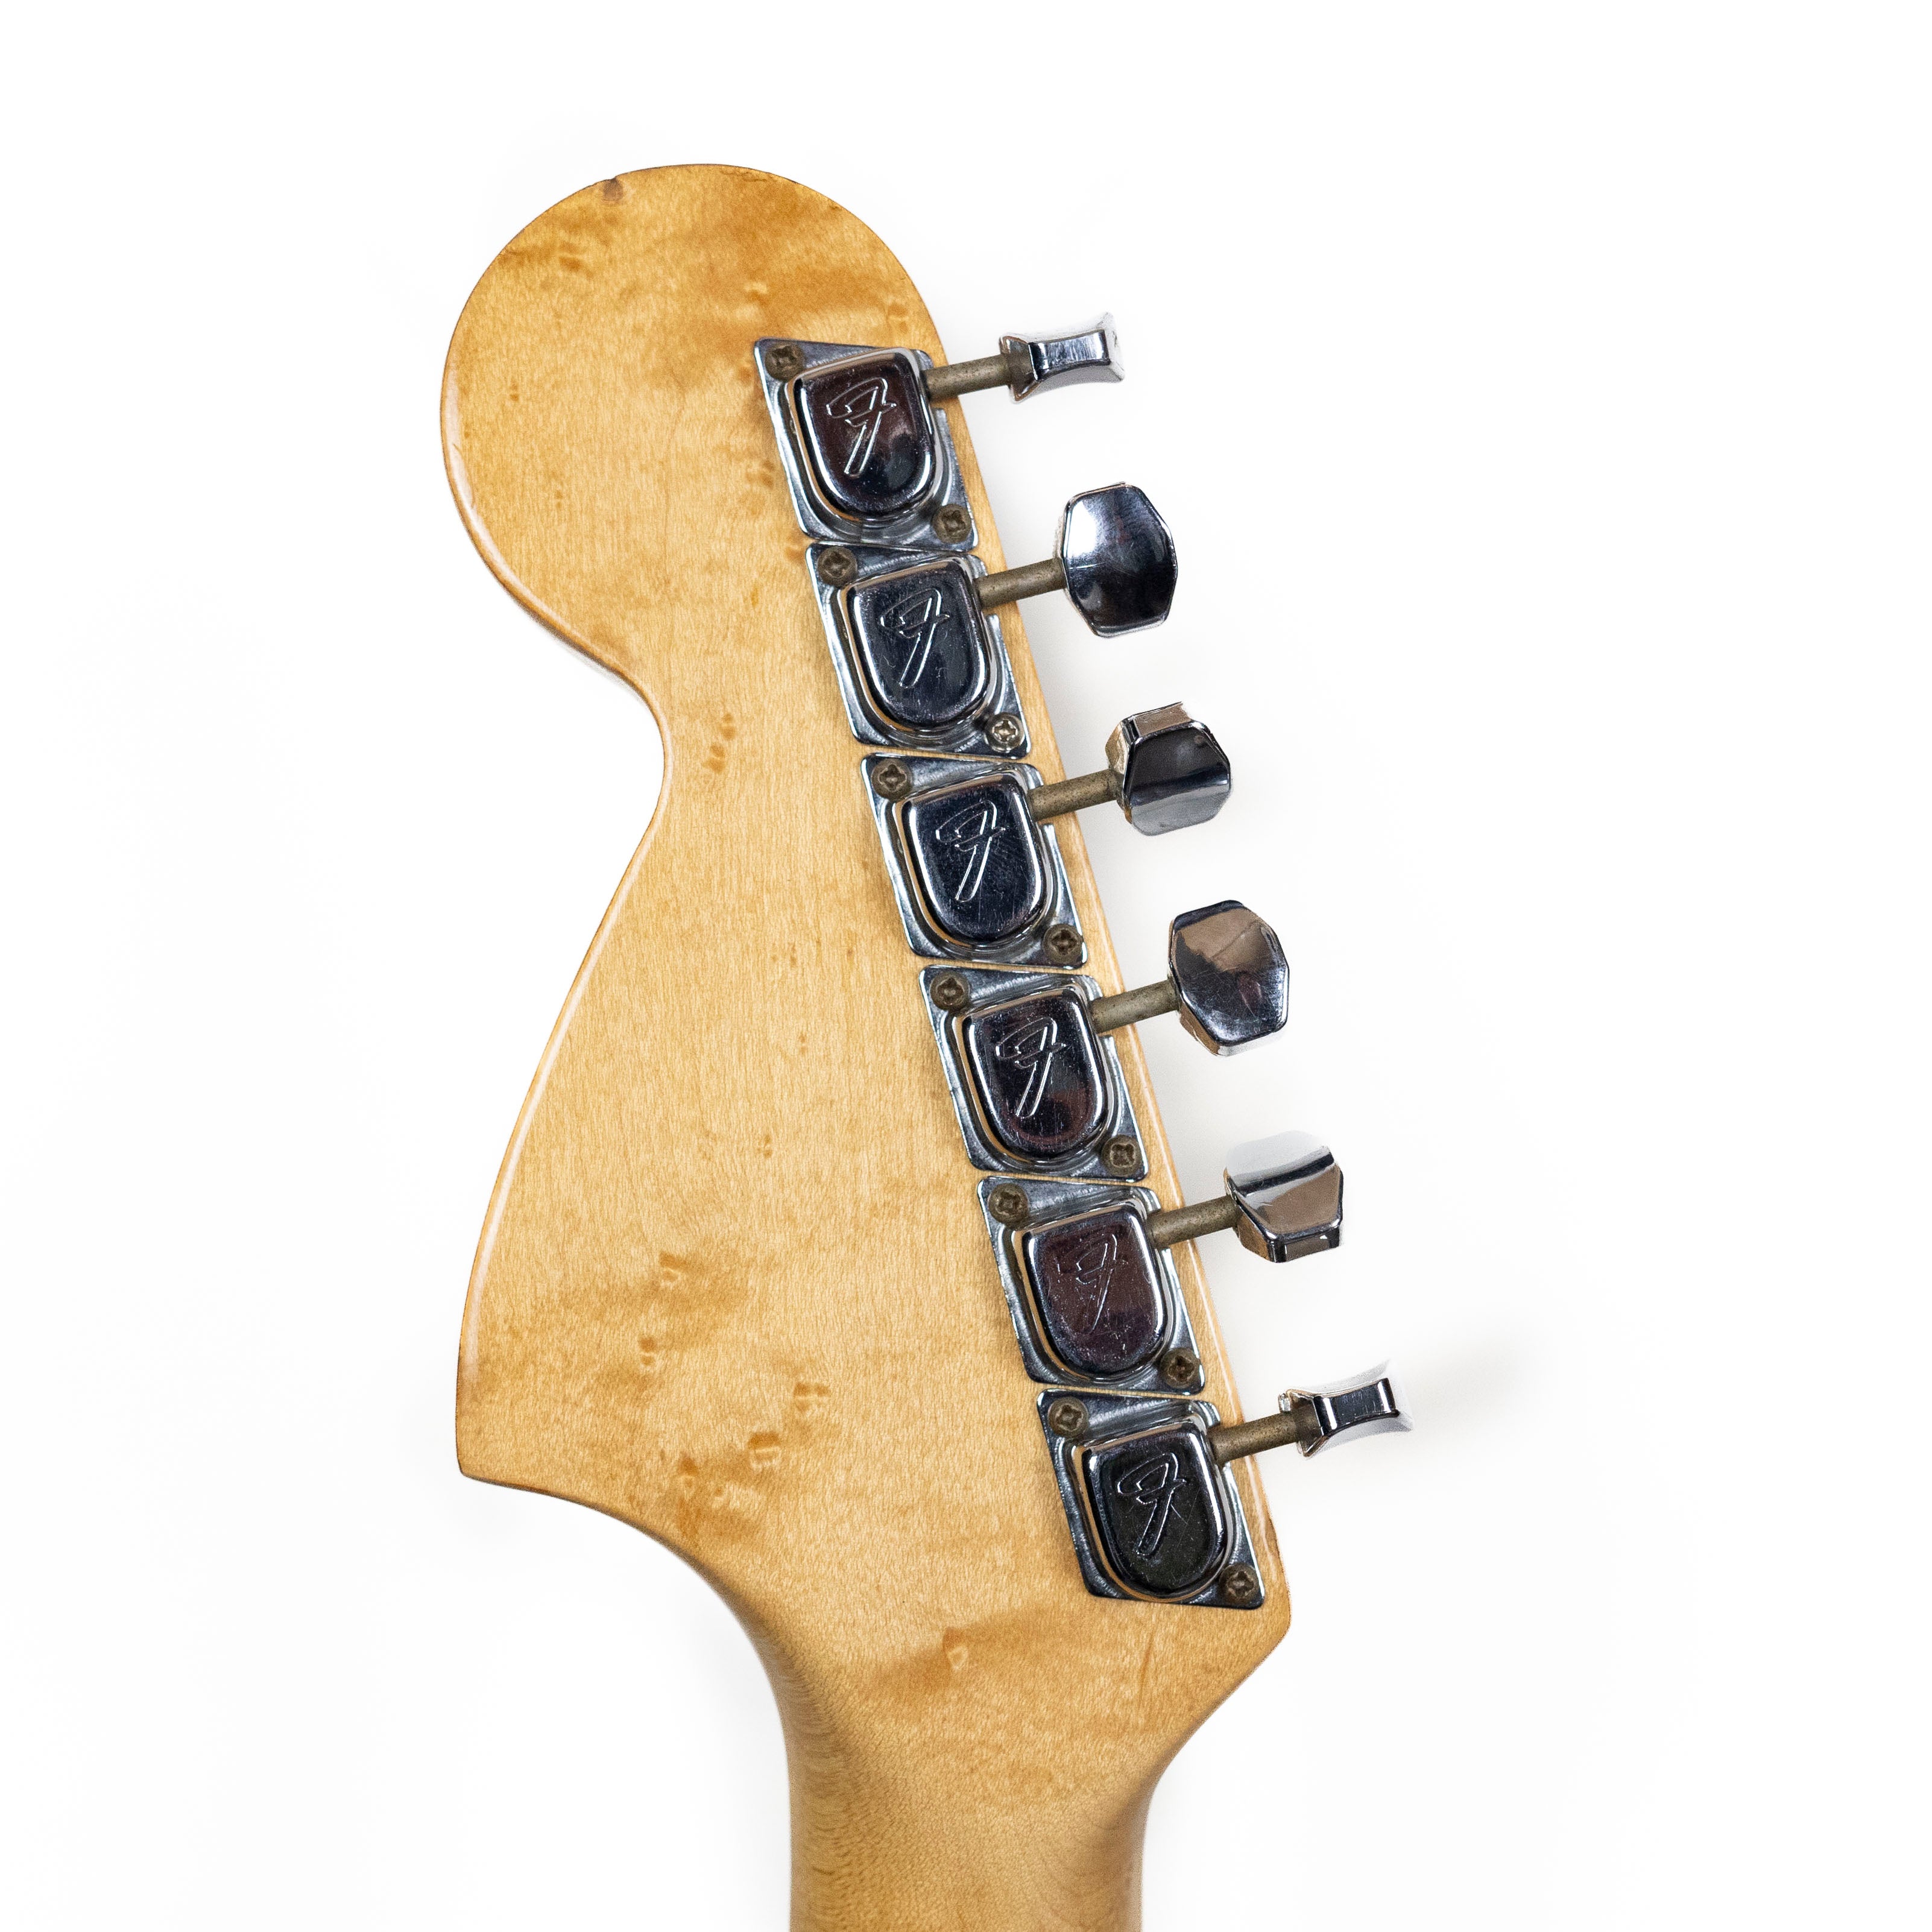 Fender 1977 Stratocaster, Sunburst